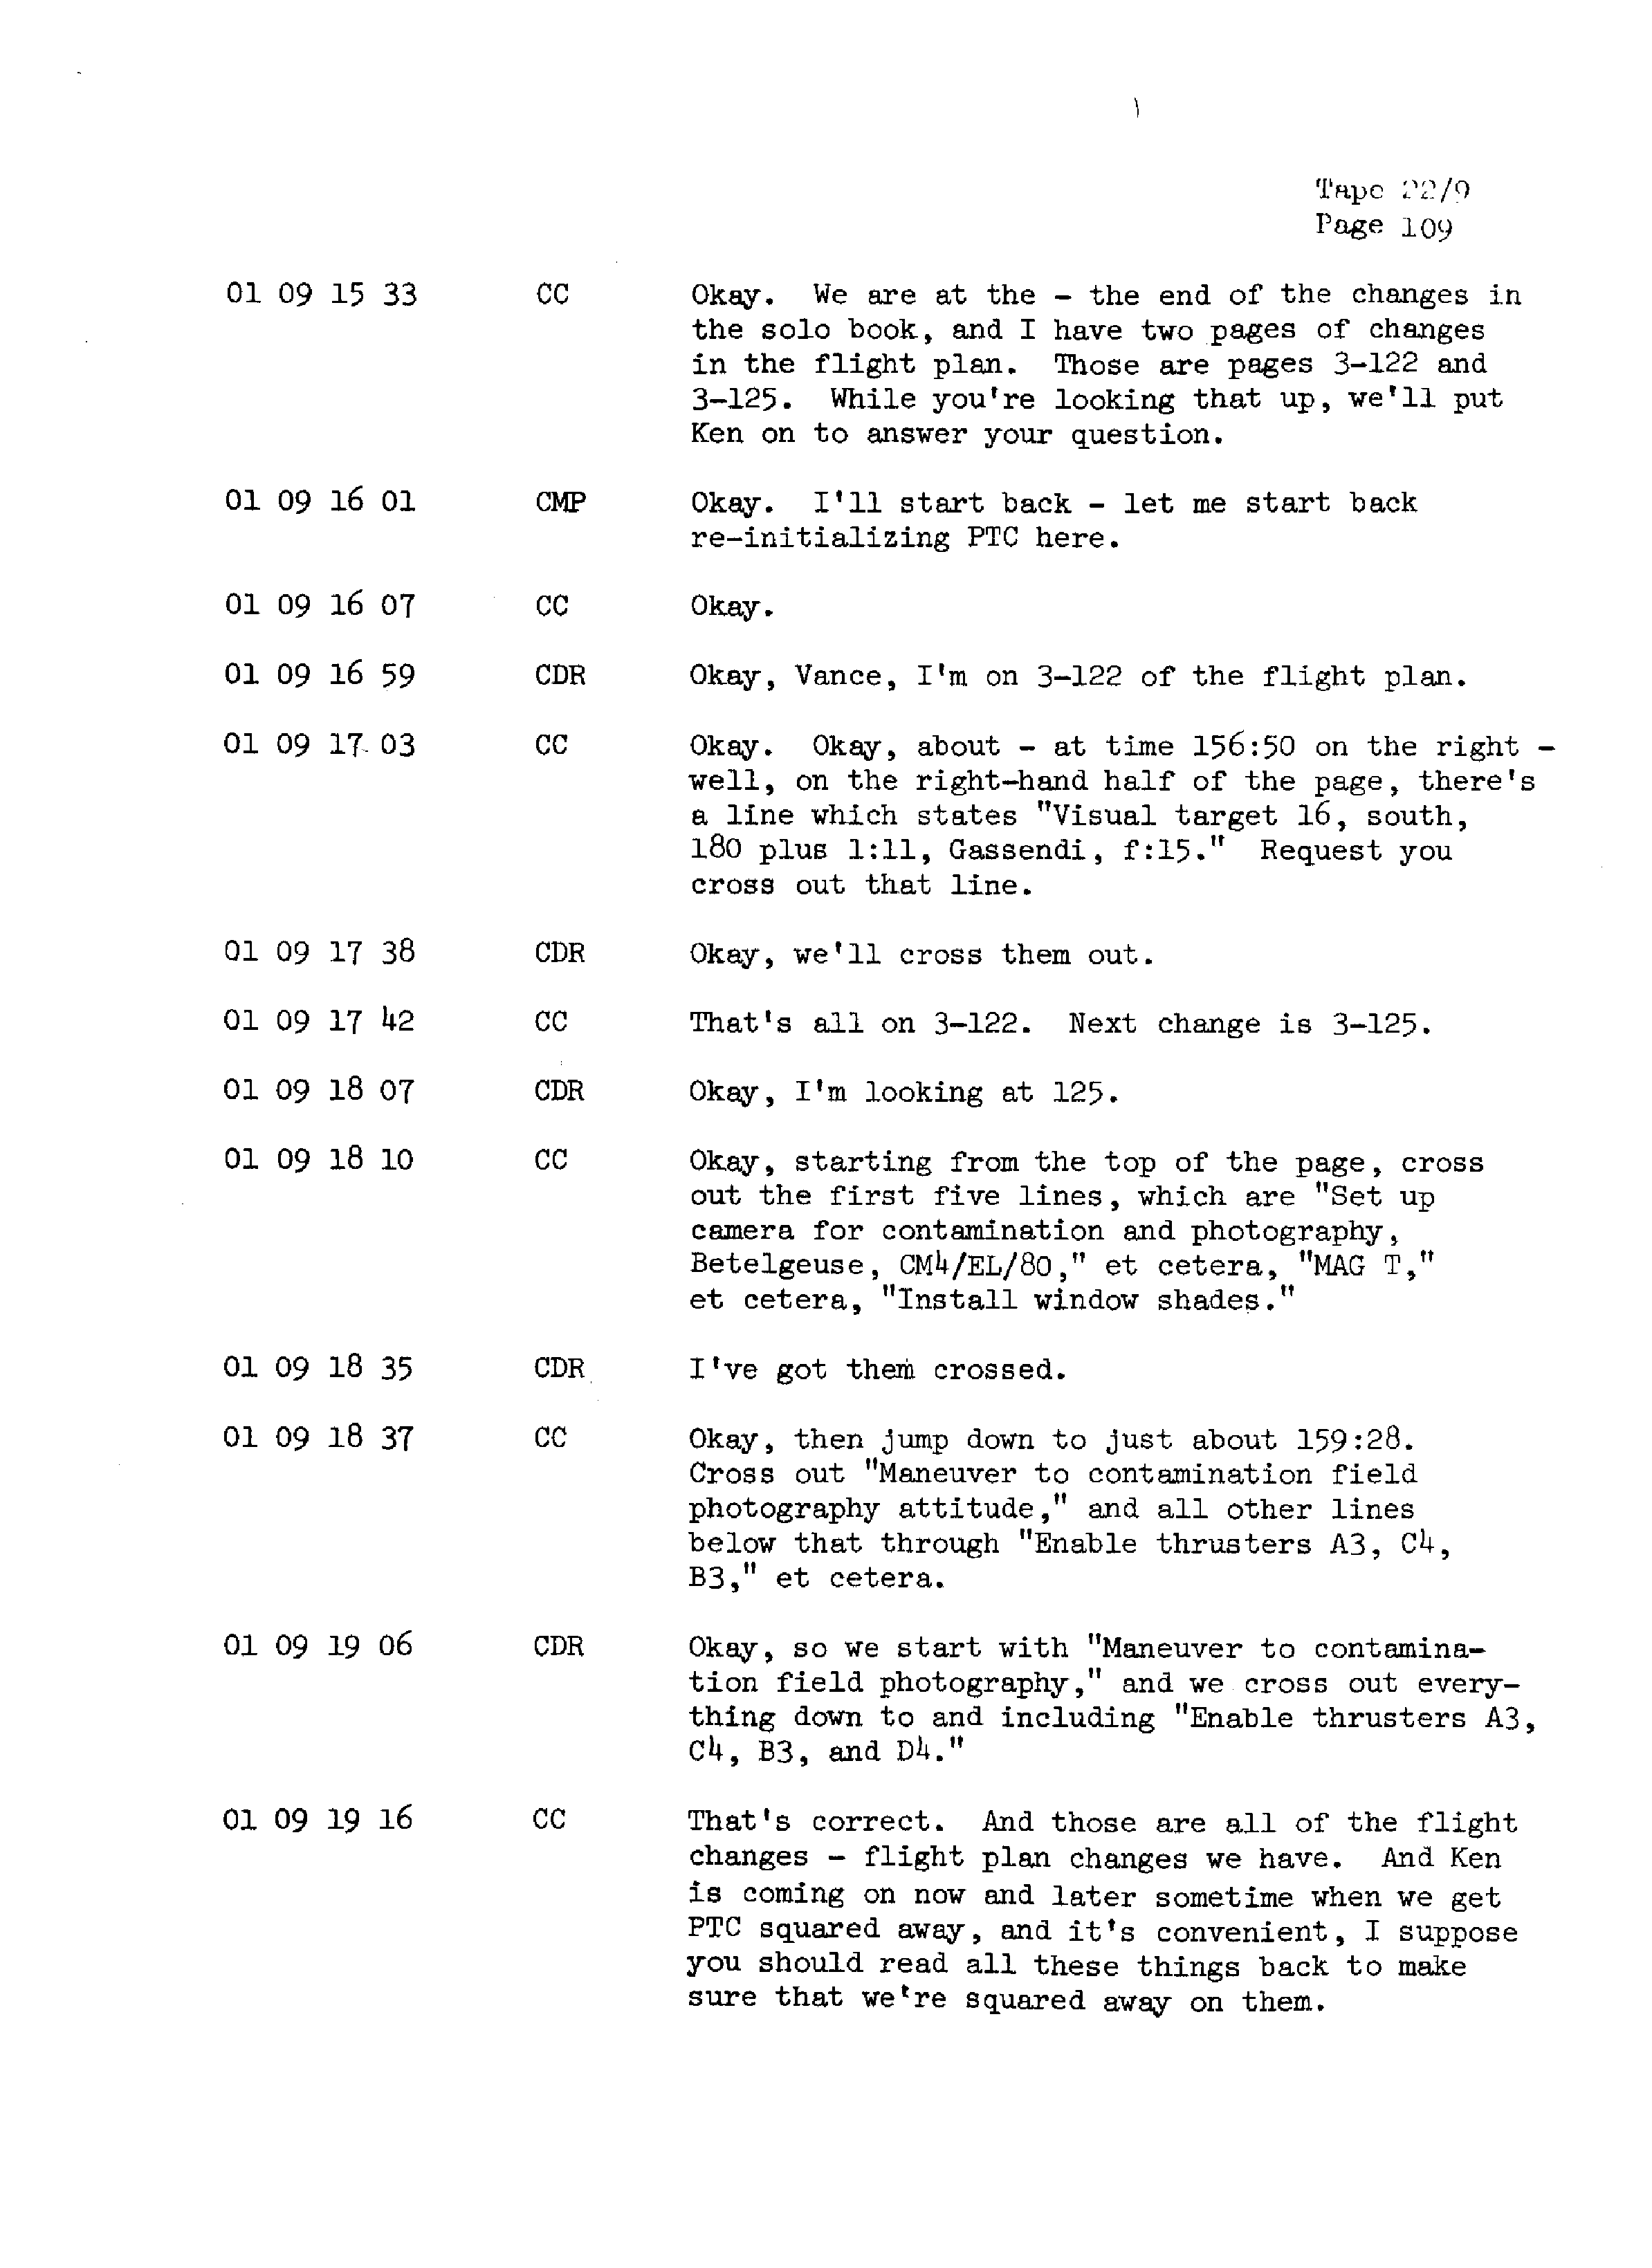 Page 116 of Apollo 13’s original transcript